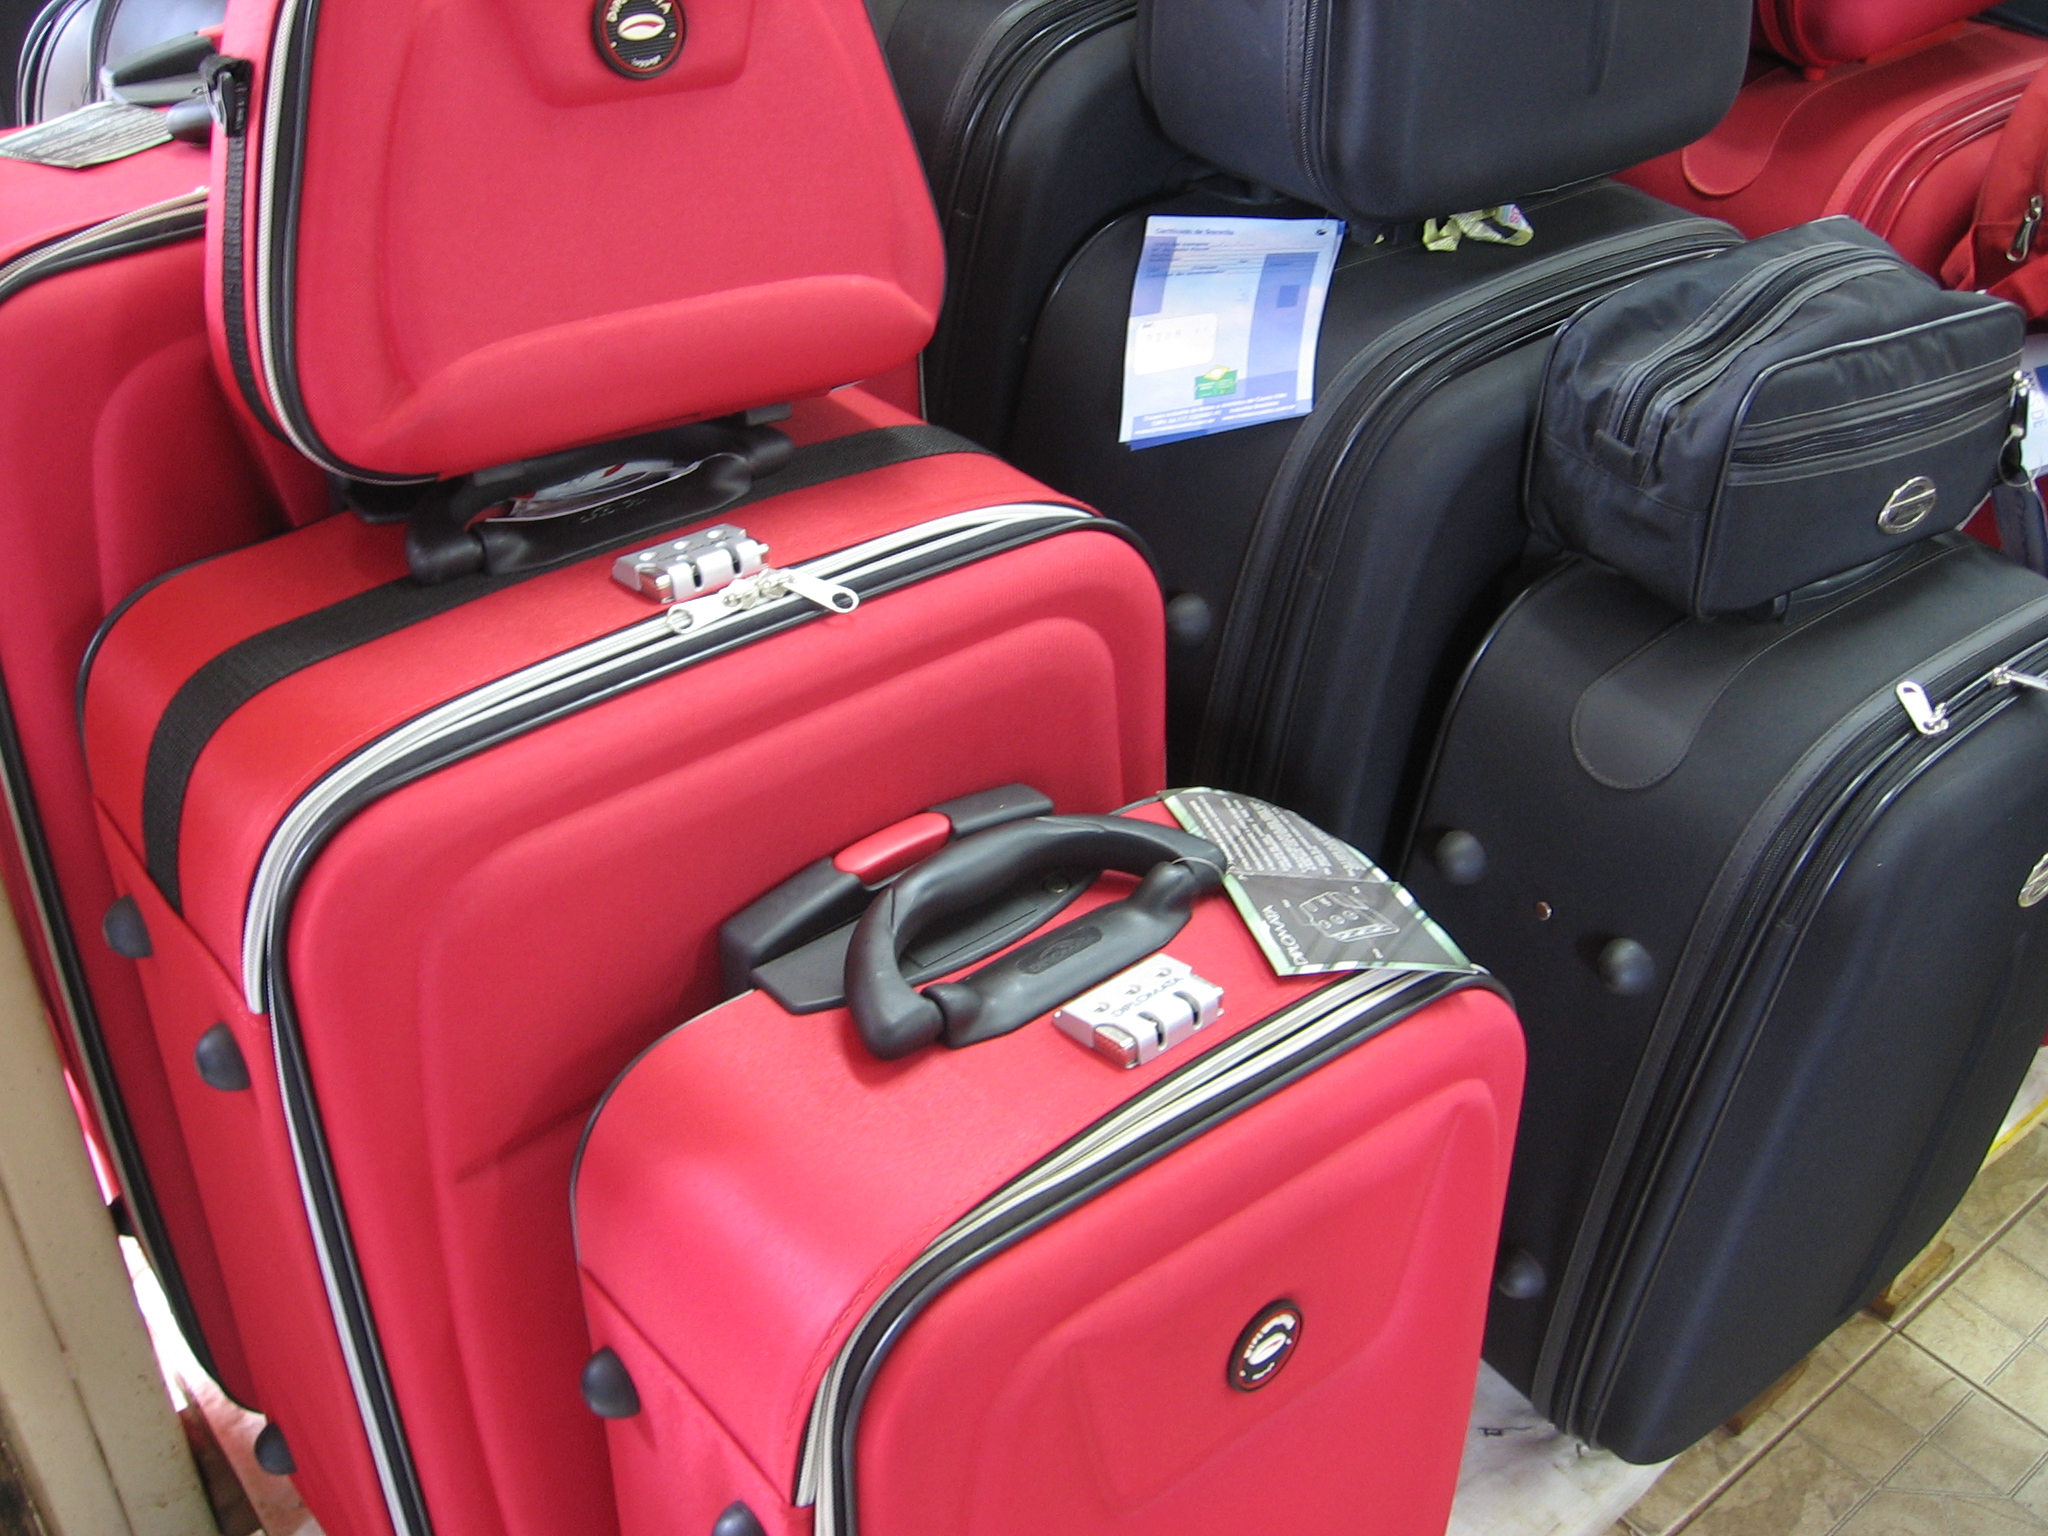 Personal del aeropuerto de Filipinas estaría plantando balas en el equipaje de turistas para extorsionarlos